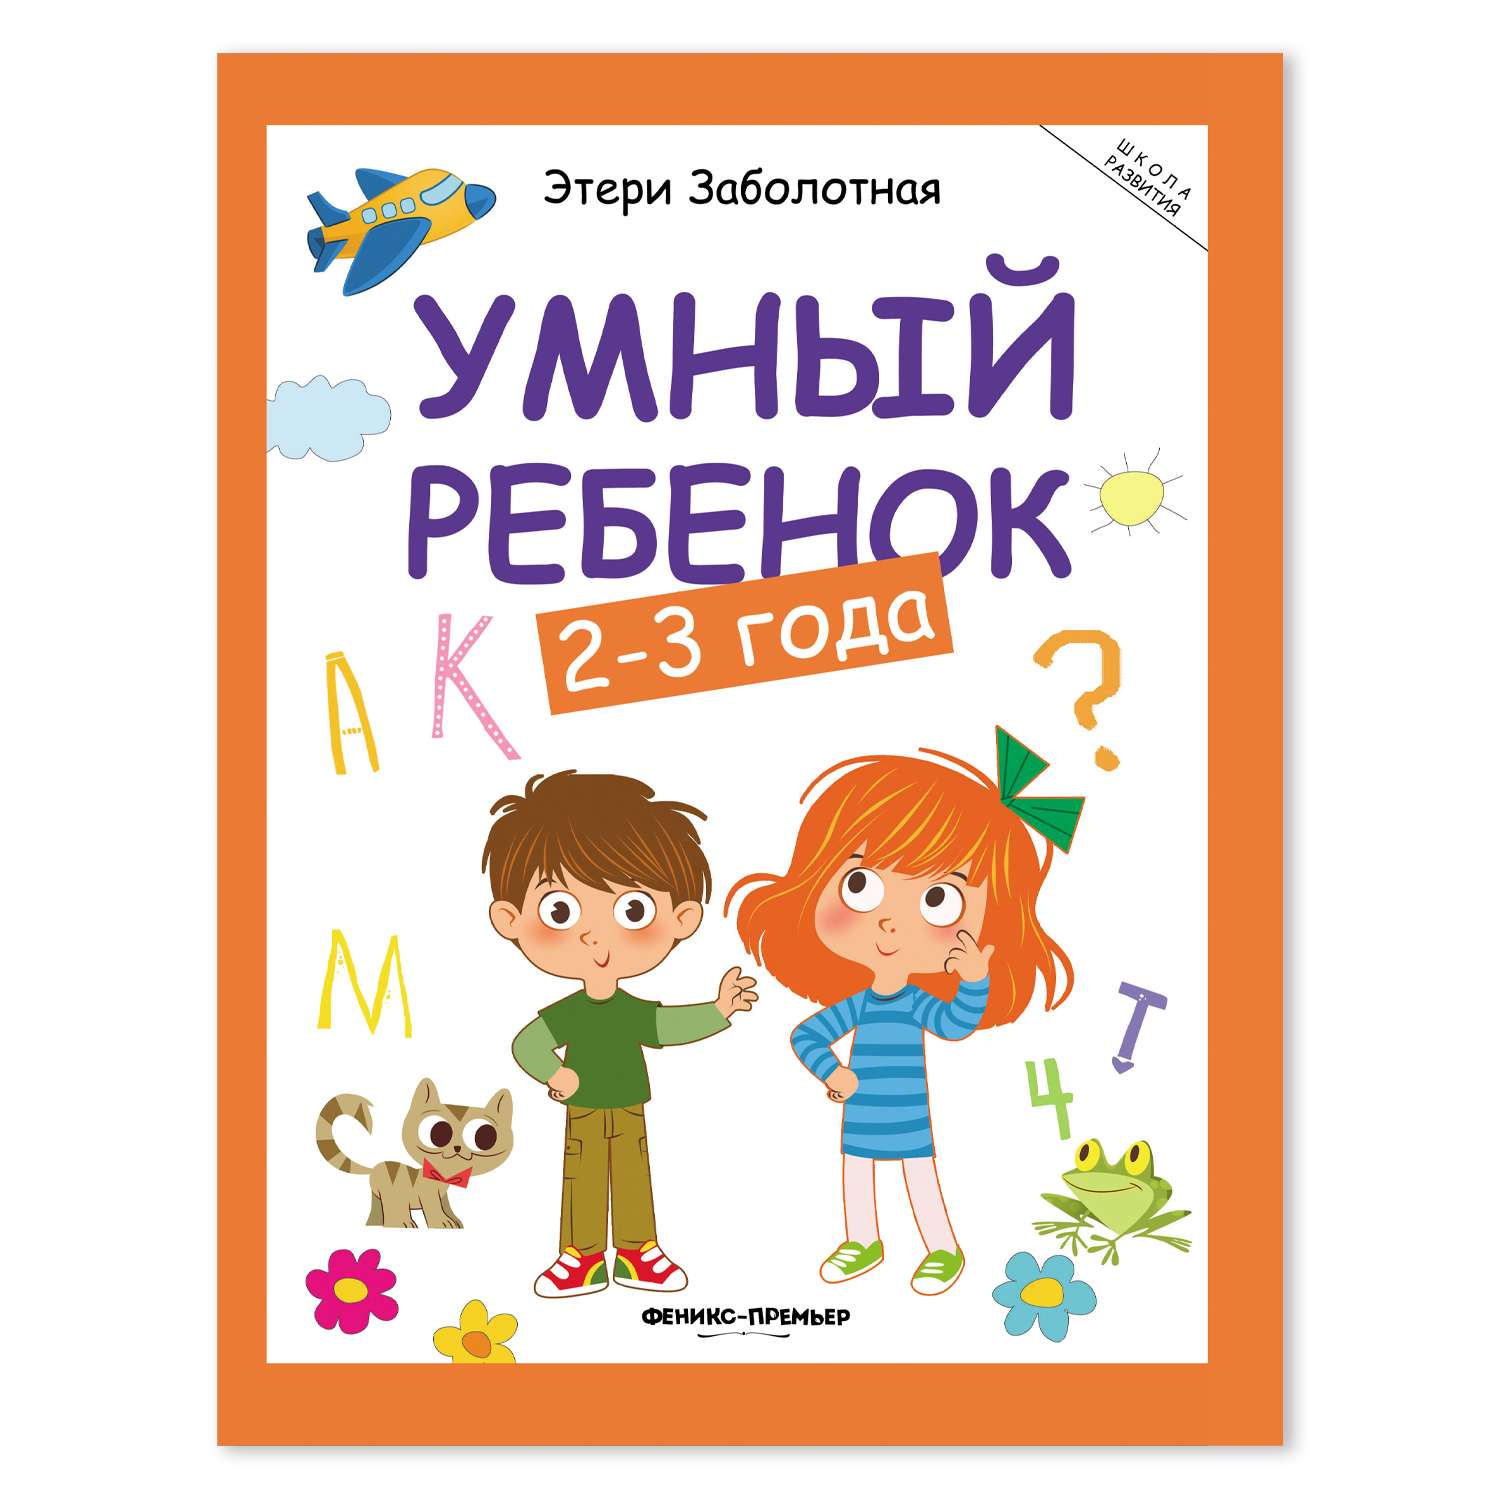 Книга Феникс Премьер Умный ребенок 2-3 года. Развитие ребенка - фото 2